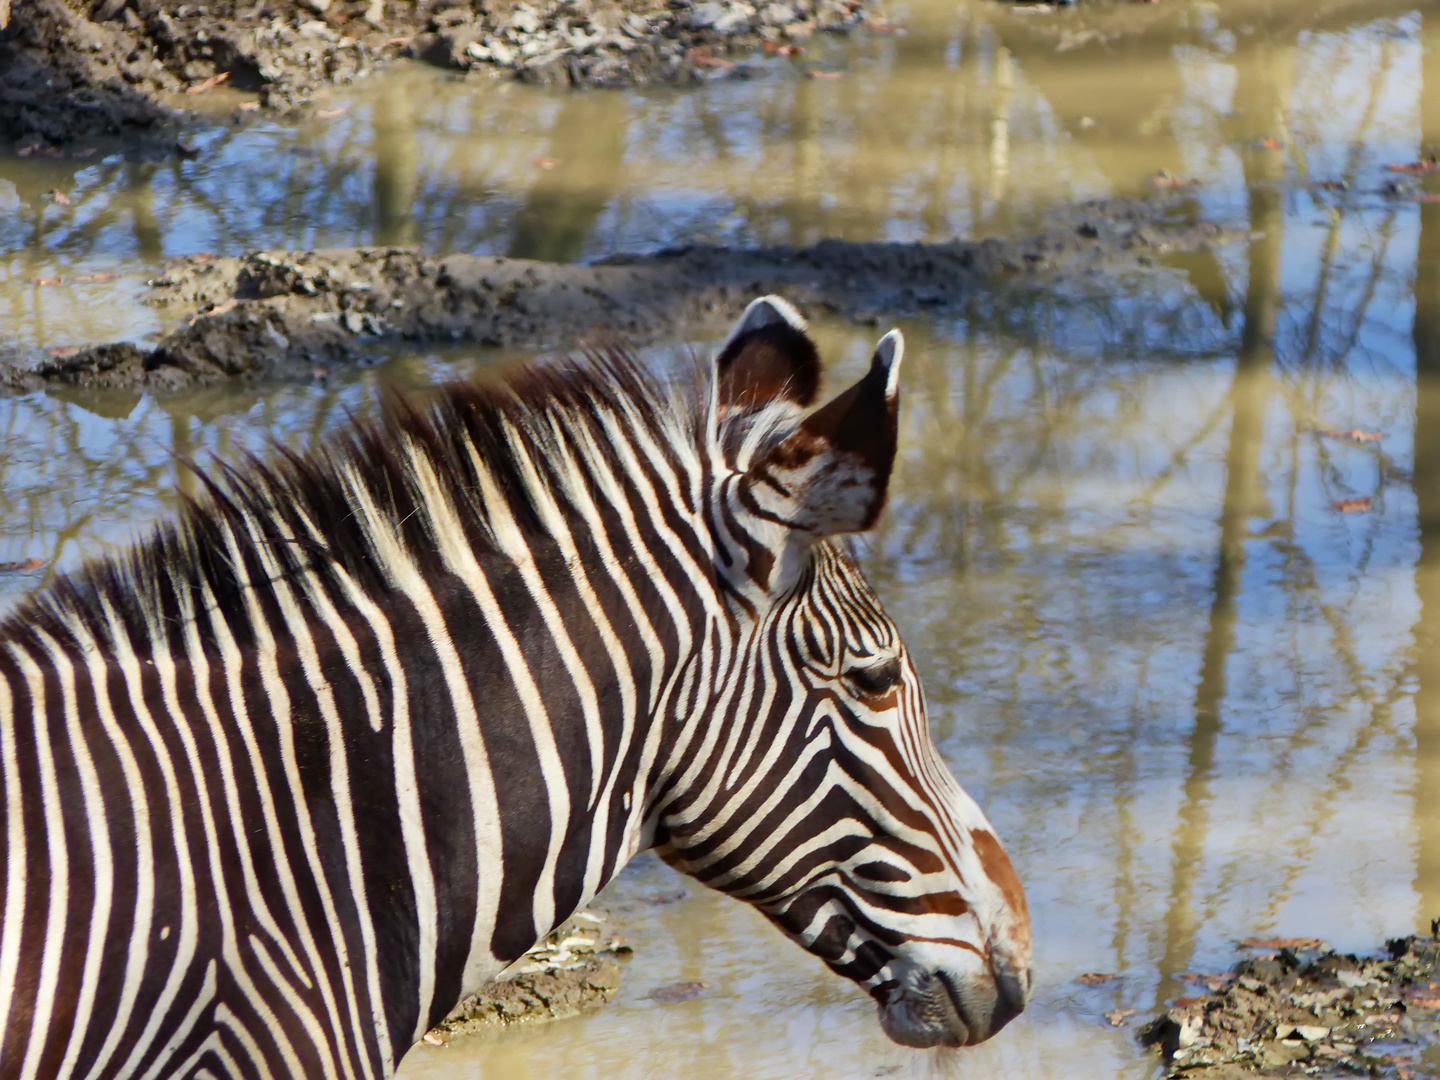 Spiegelung mit Zebra